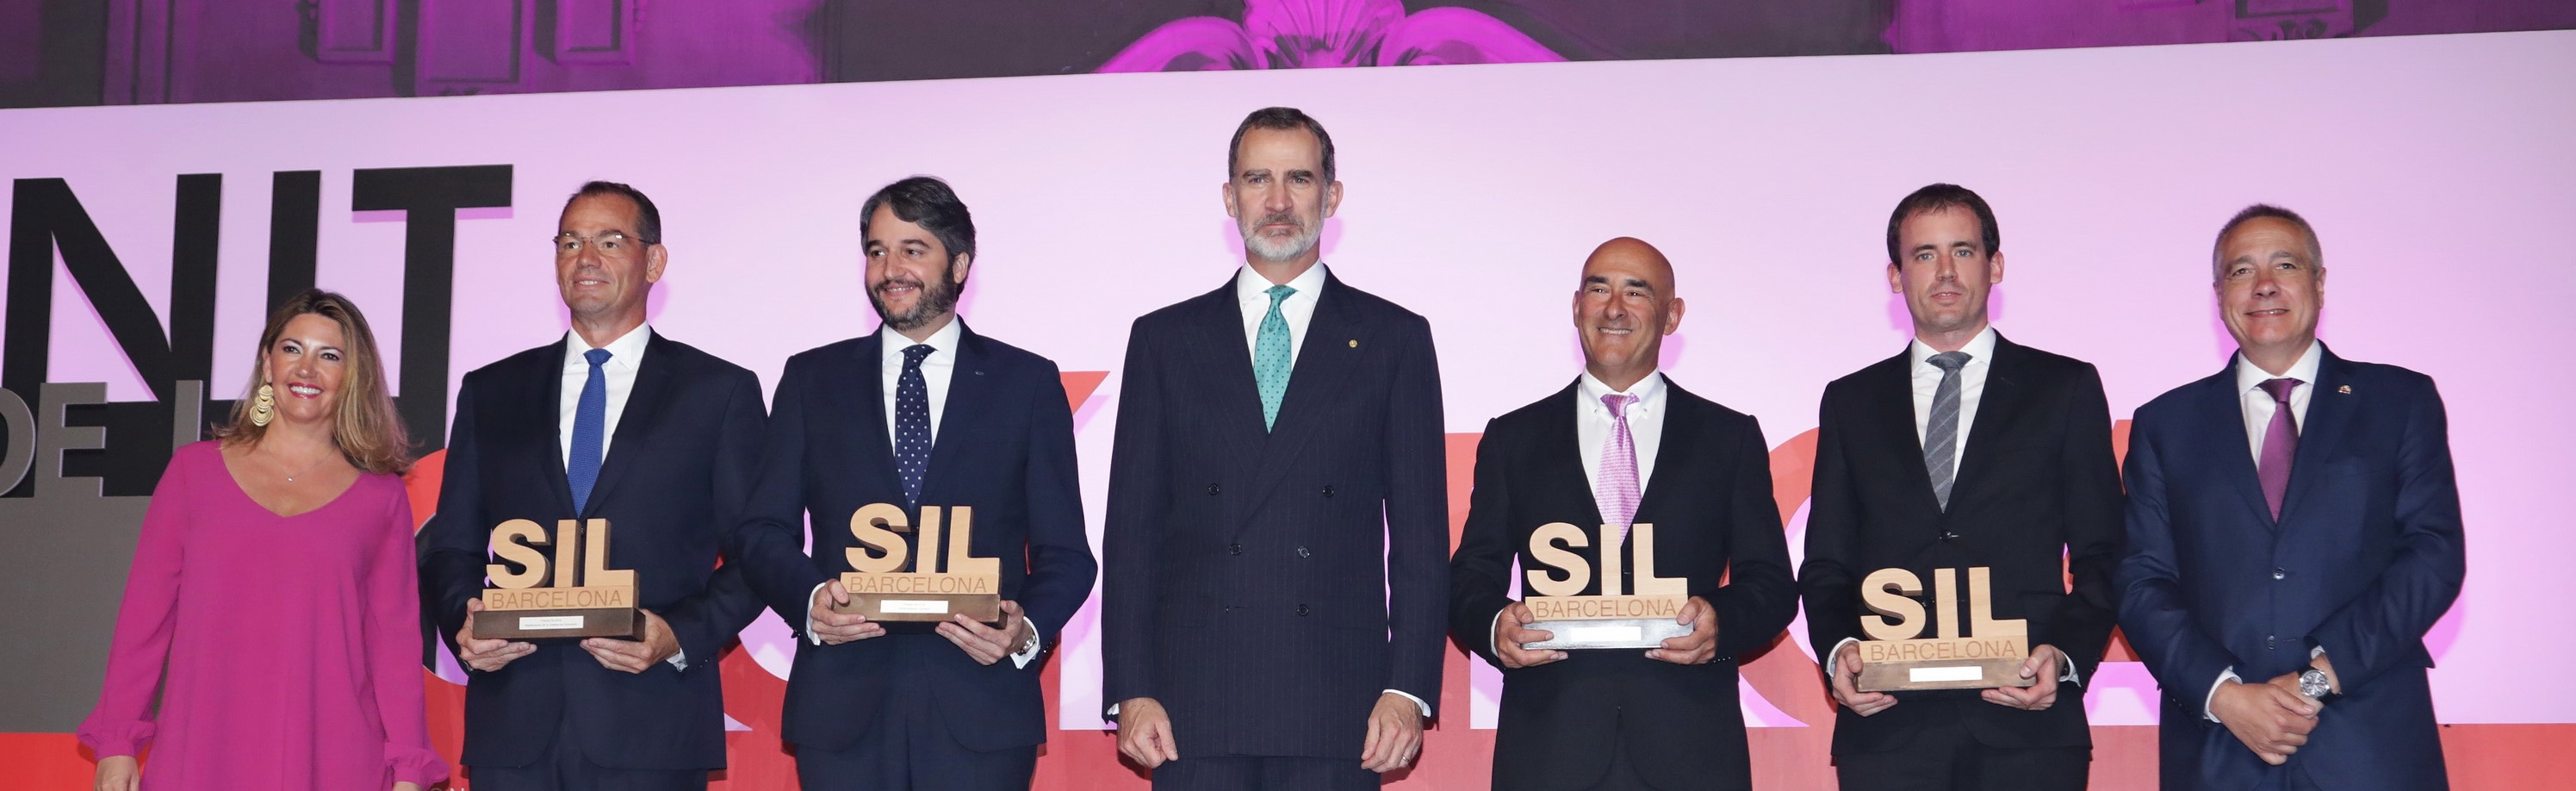 Celsa Group_Premios SIL